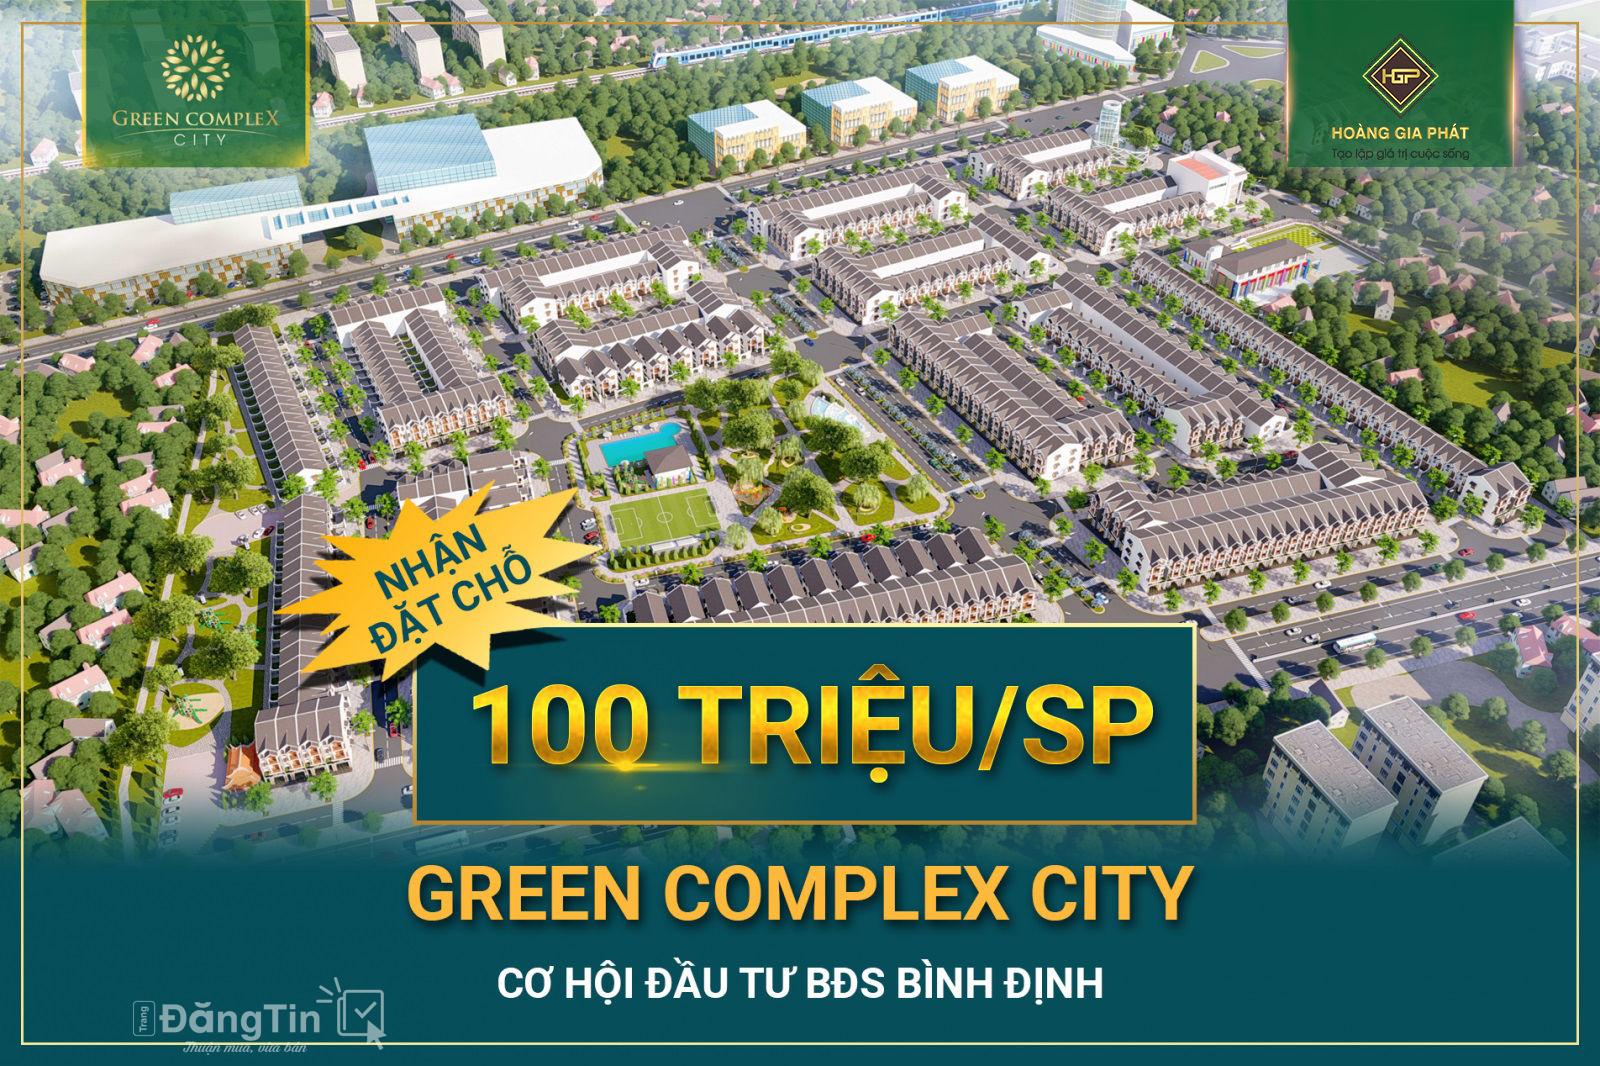 Dự án Green Complex City chỉ còn vài tuần nữa sẽ bàn giao mặt bằng 